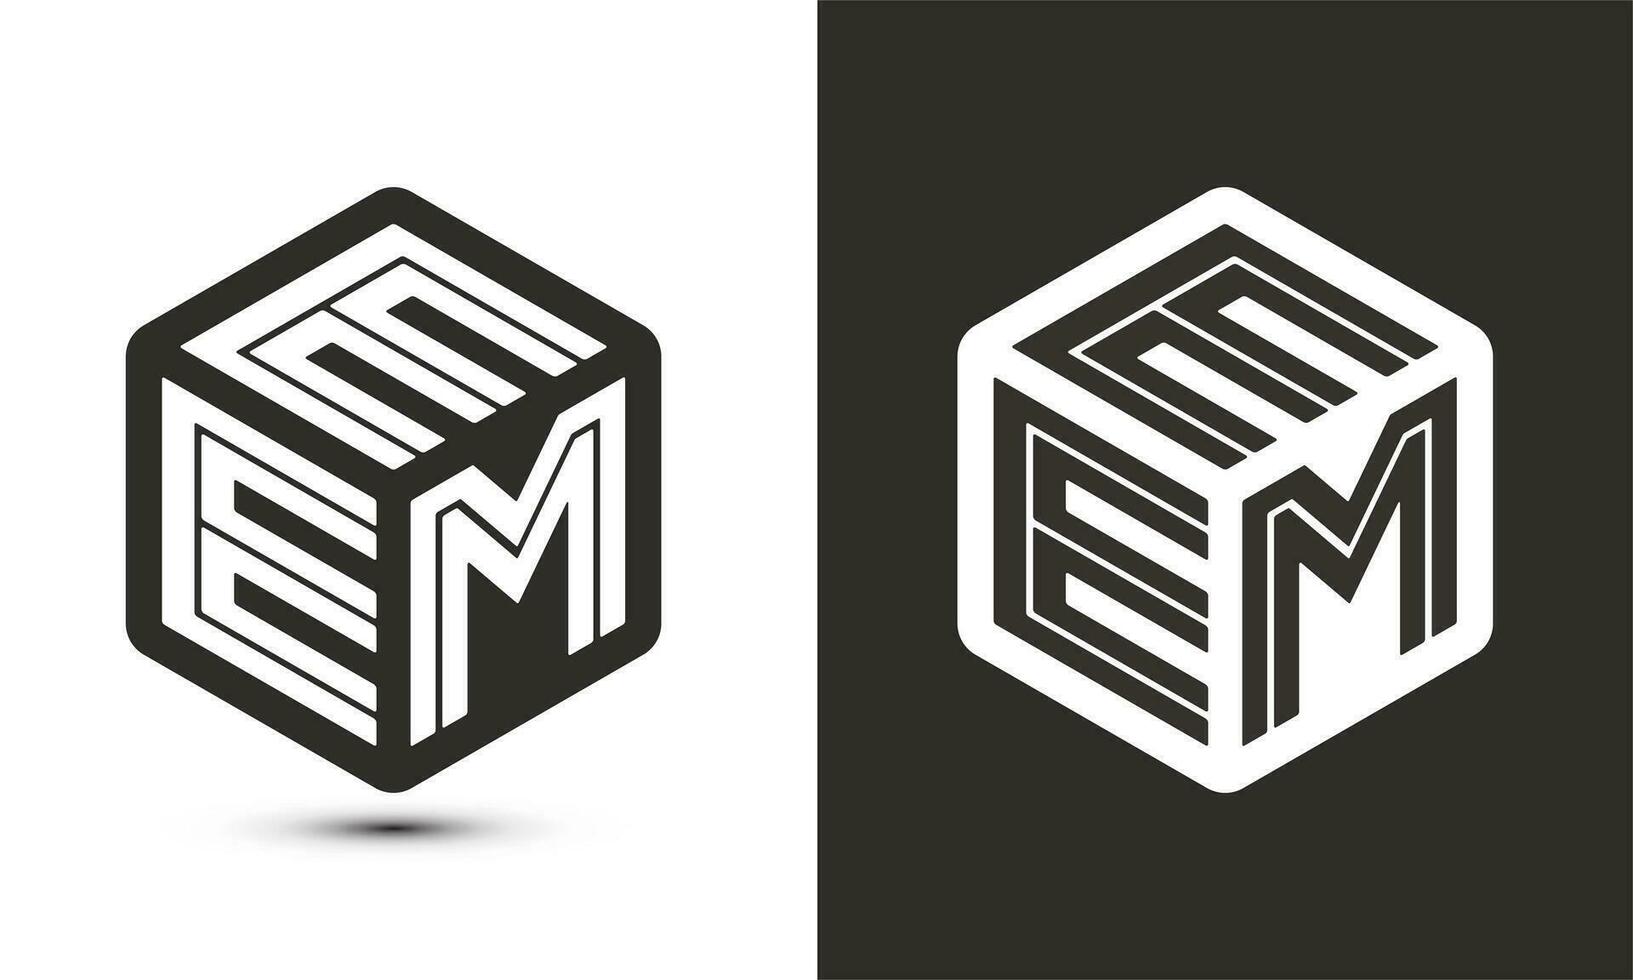 eem brief logo ontwerp met illustrator kubus logo, vector logo modern alfabet doopvont overlappen stijl.